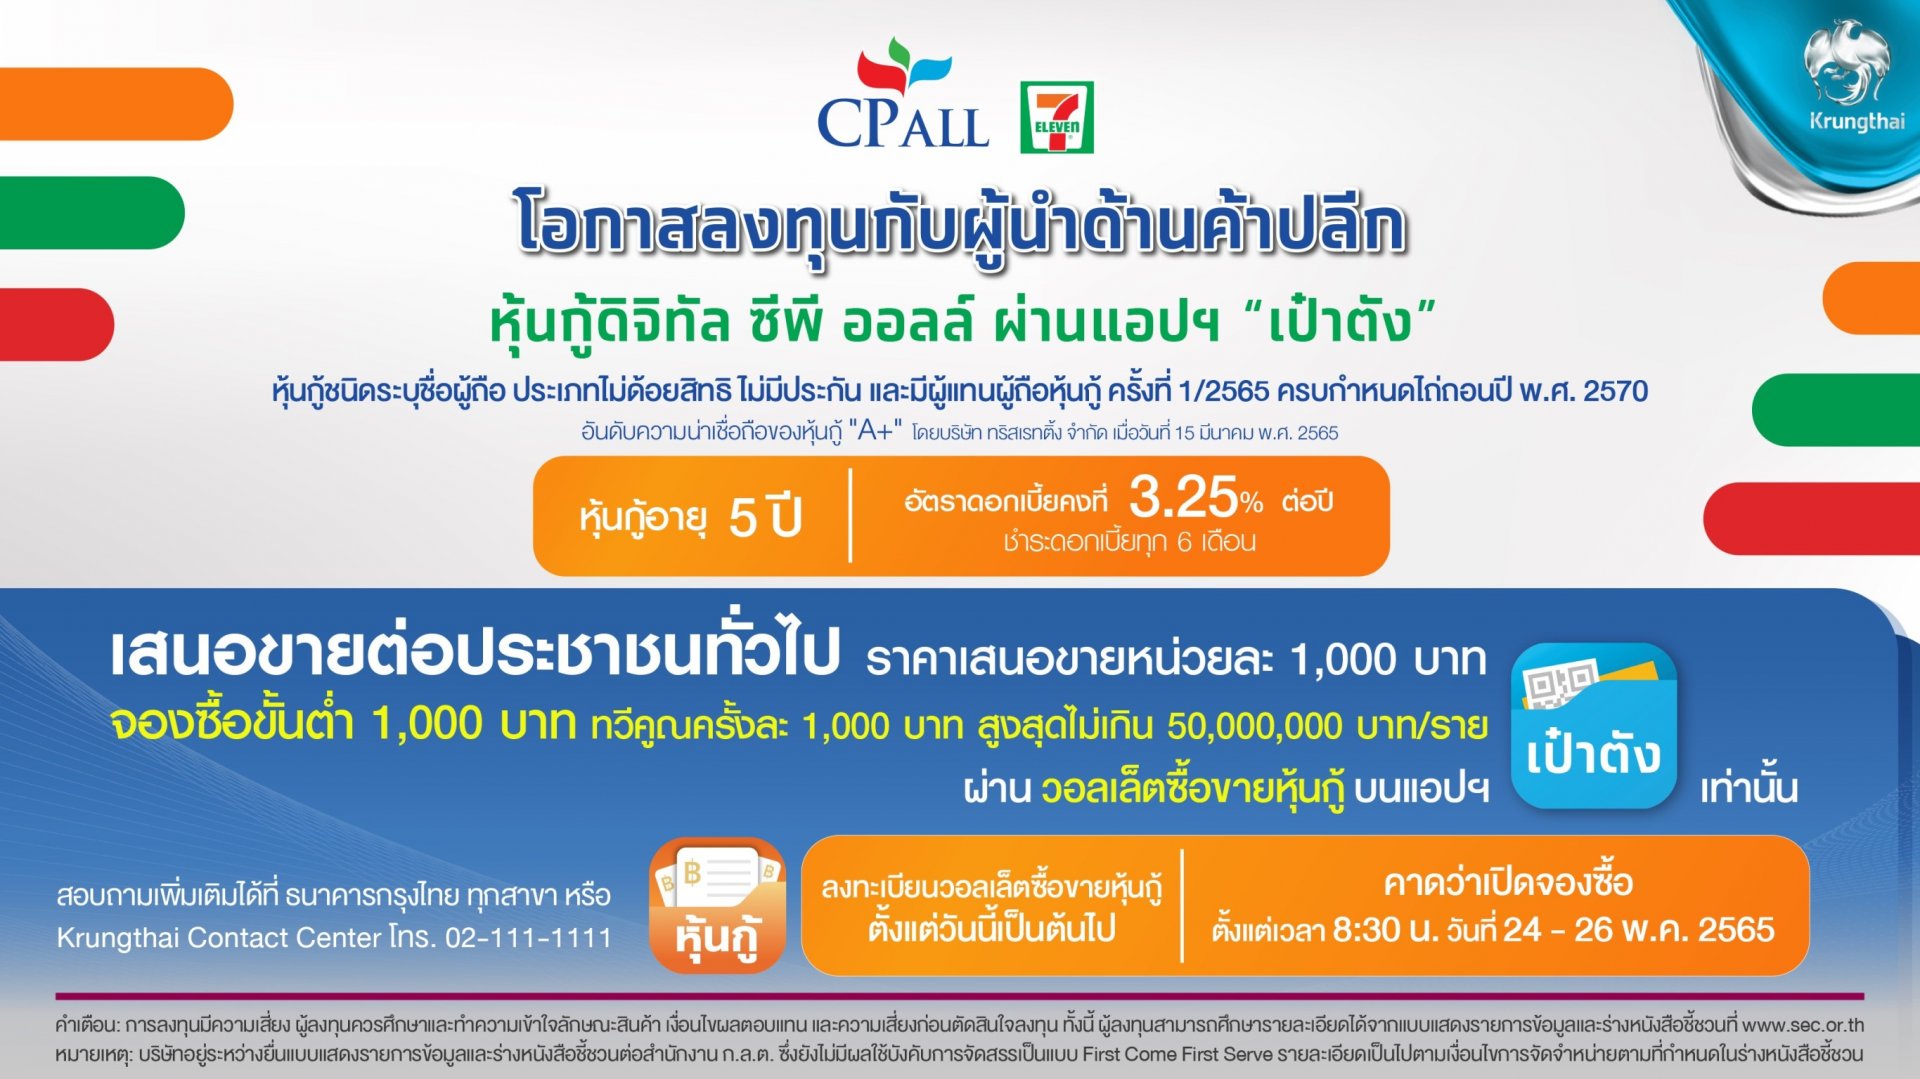 กรุงไทย จับมือ ซีพีออลล์ เปิดขายหุ้นกู้ดิจิทัล CPALL ผ่านแอป "เป๋าตัง" 24 พ.ค.นี้  